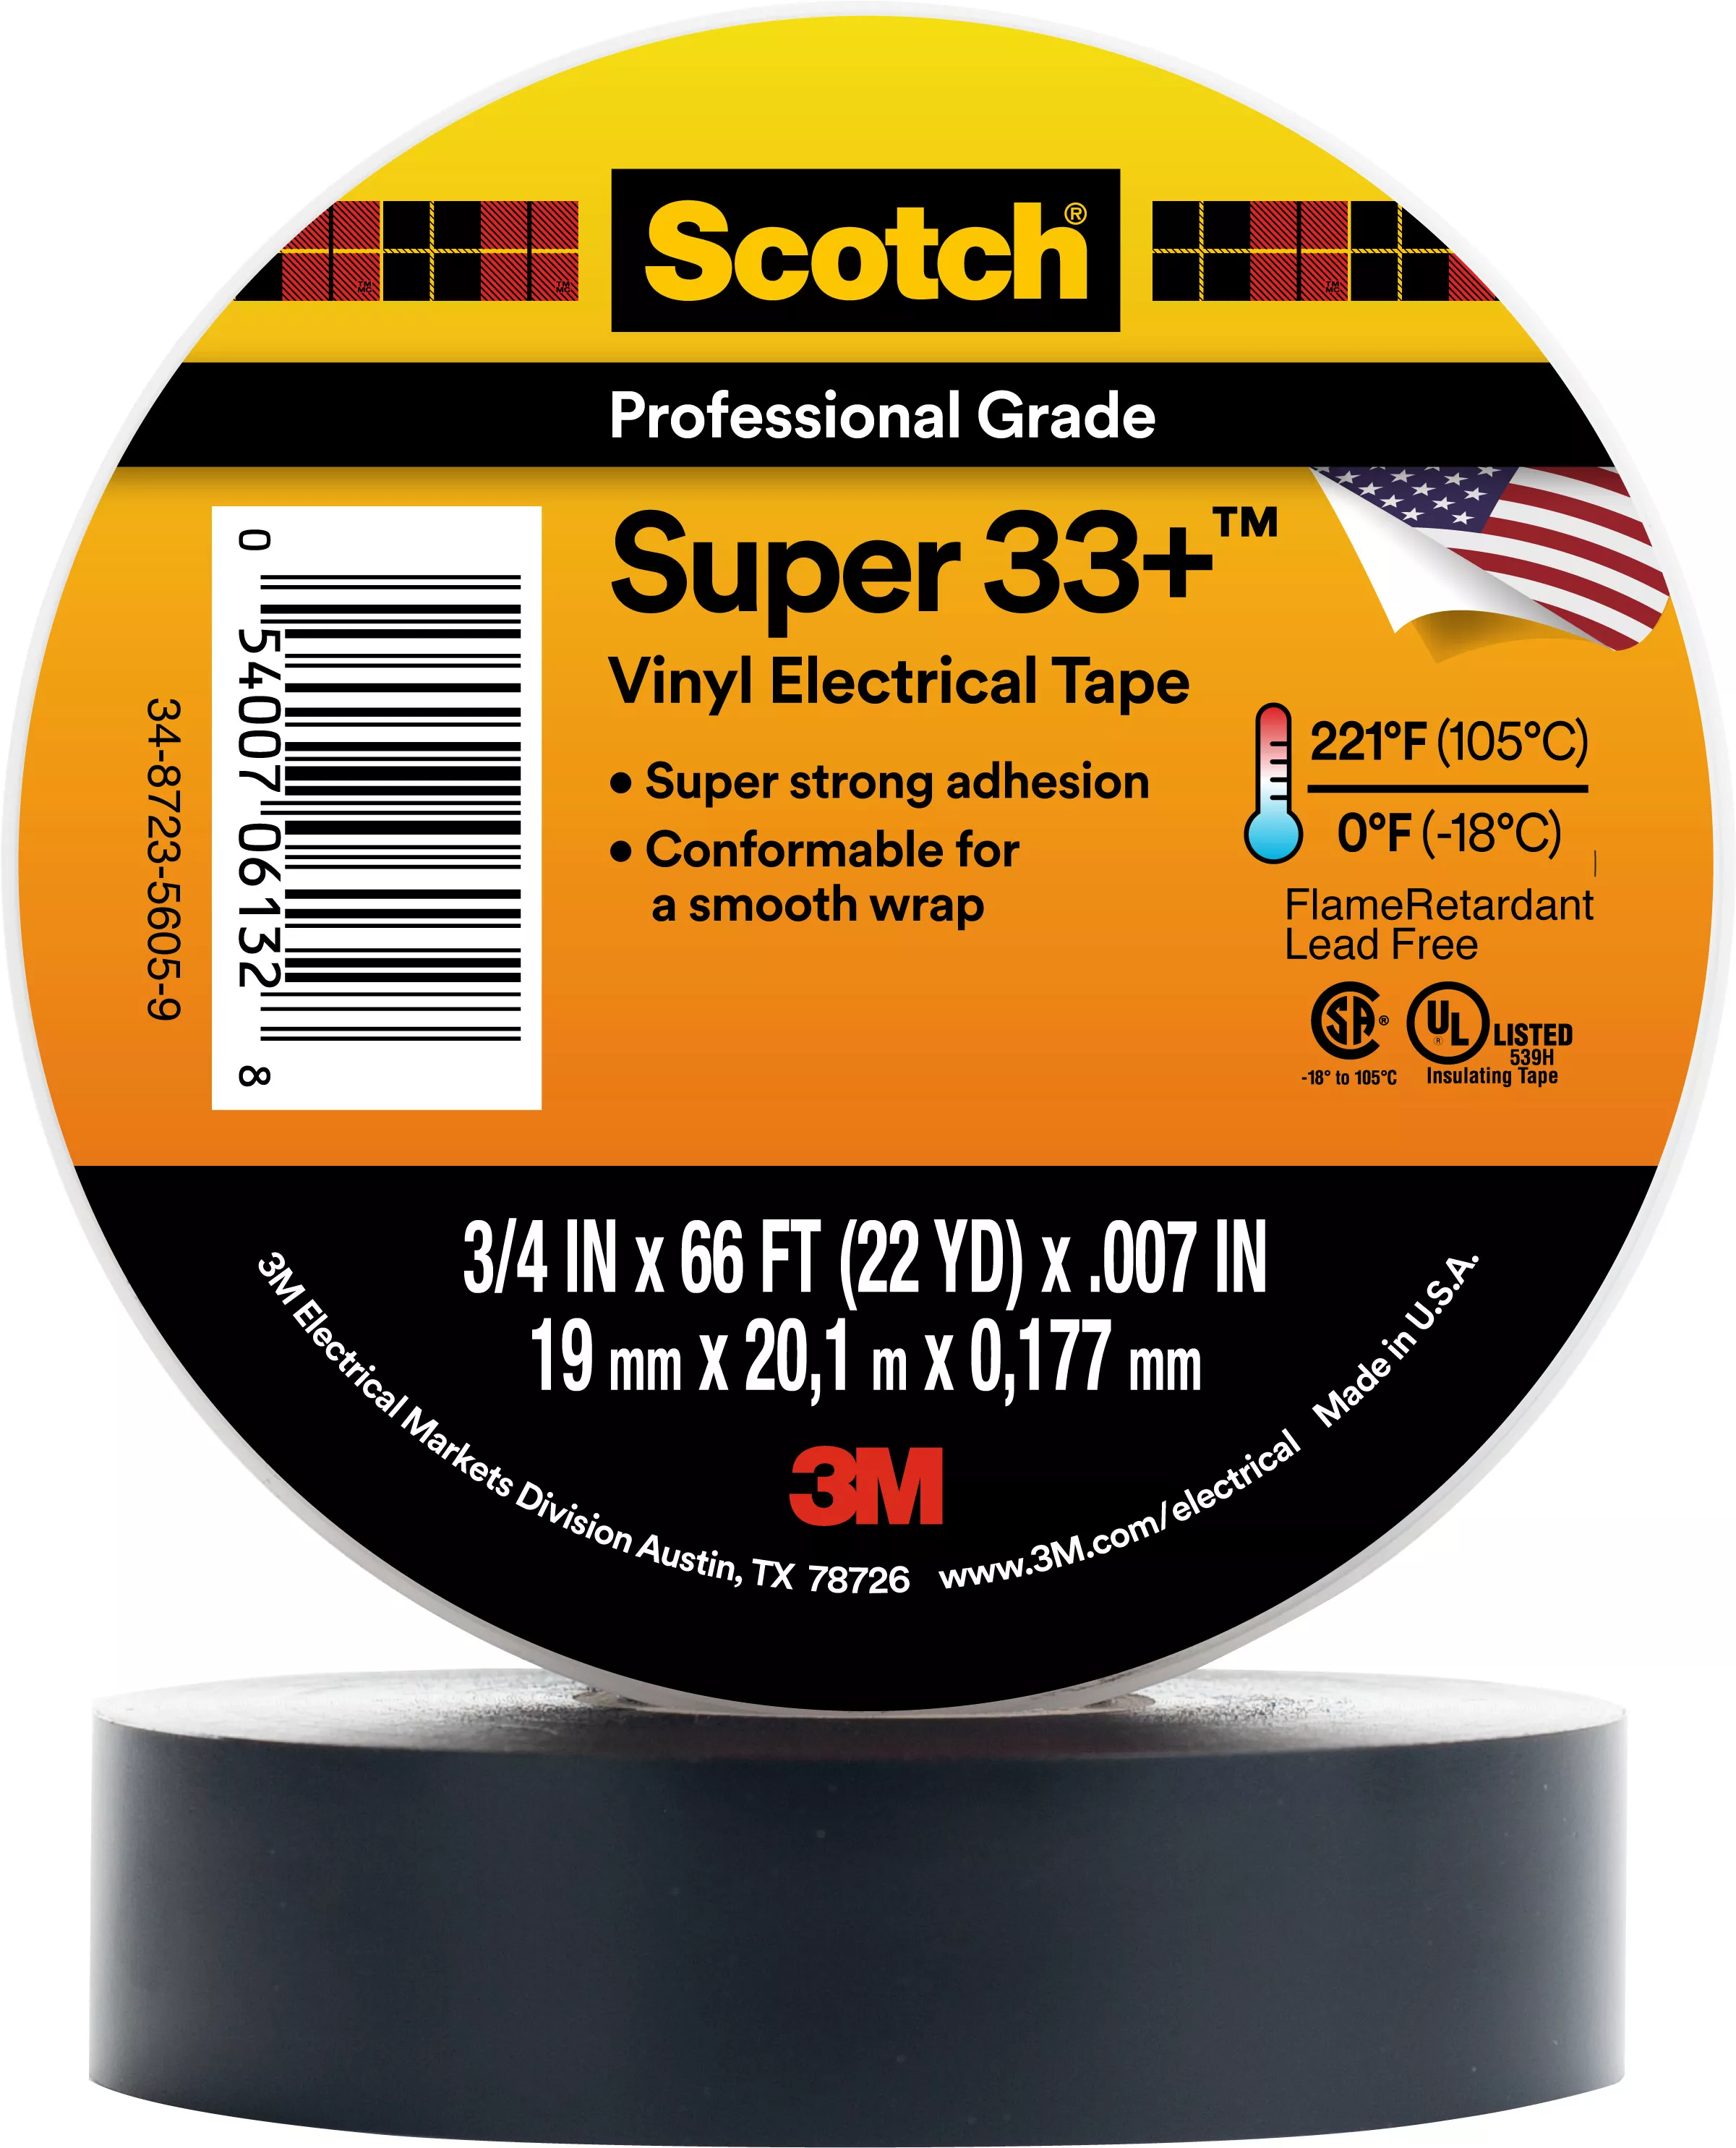 Scotch® Super 33+ Vinyl Electrical Tape, 3/4 in x 66 ft, 1-1/2 in Core,
Black, 10 rolls/carton, 100 rolls/Case